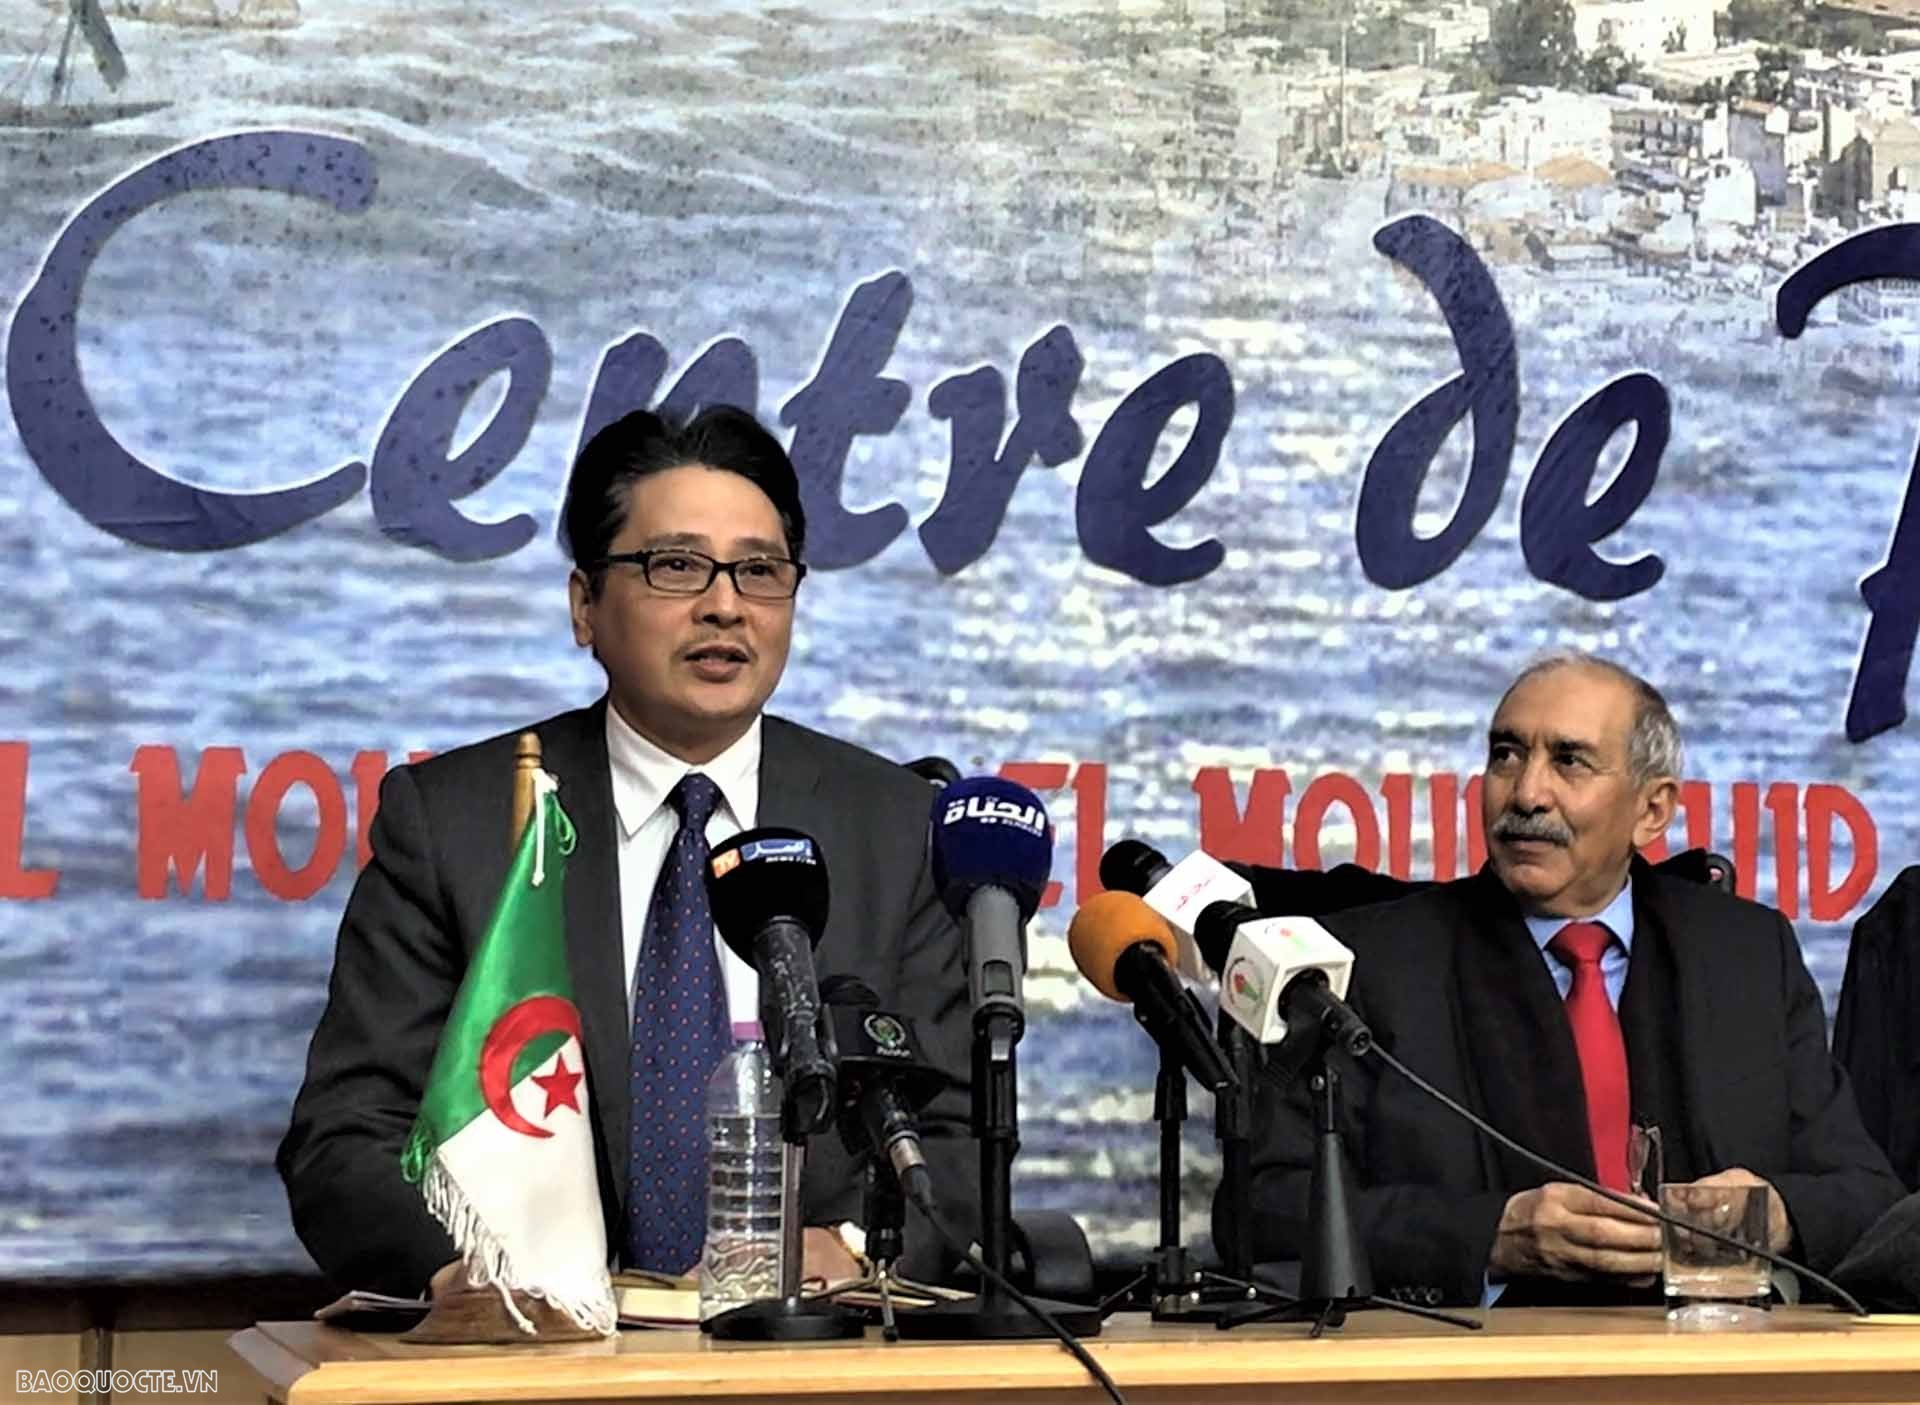 Đại sứ Nguyễn Thành Vinh tham dự “Diễn đàn tưởng nhớ các nhà báo liệt sĩ trong vụ rơi máy bay ở Việt Nam năm 1974” do nhật báo quốc gia Algeria El Moudjahid tổ chức.